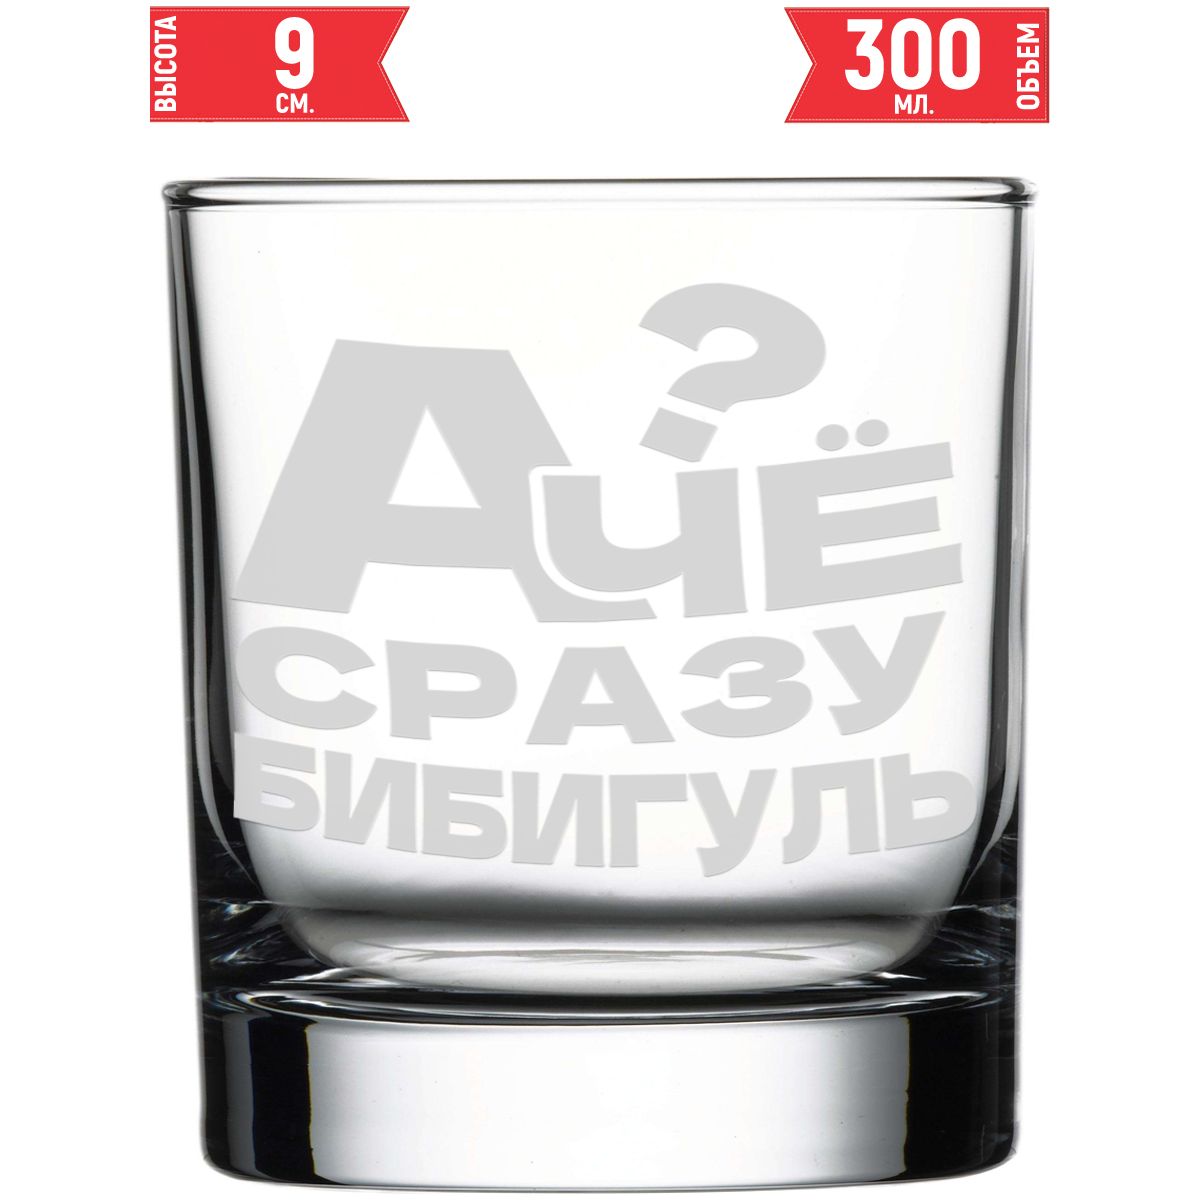 Что насчет стакана из стекла марки AV Podarki, а почему не сразу Бибигуль?